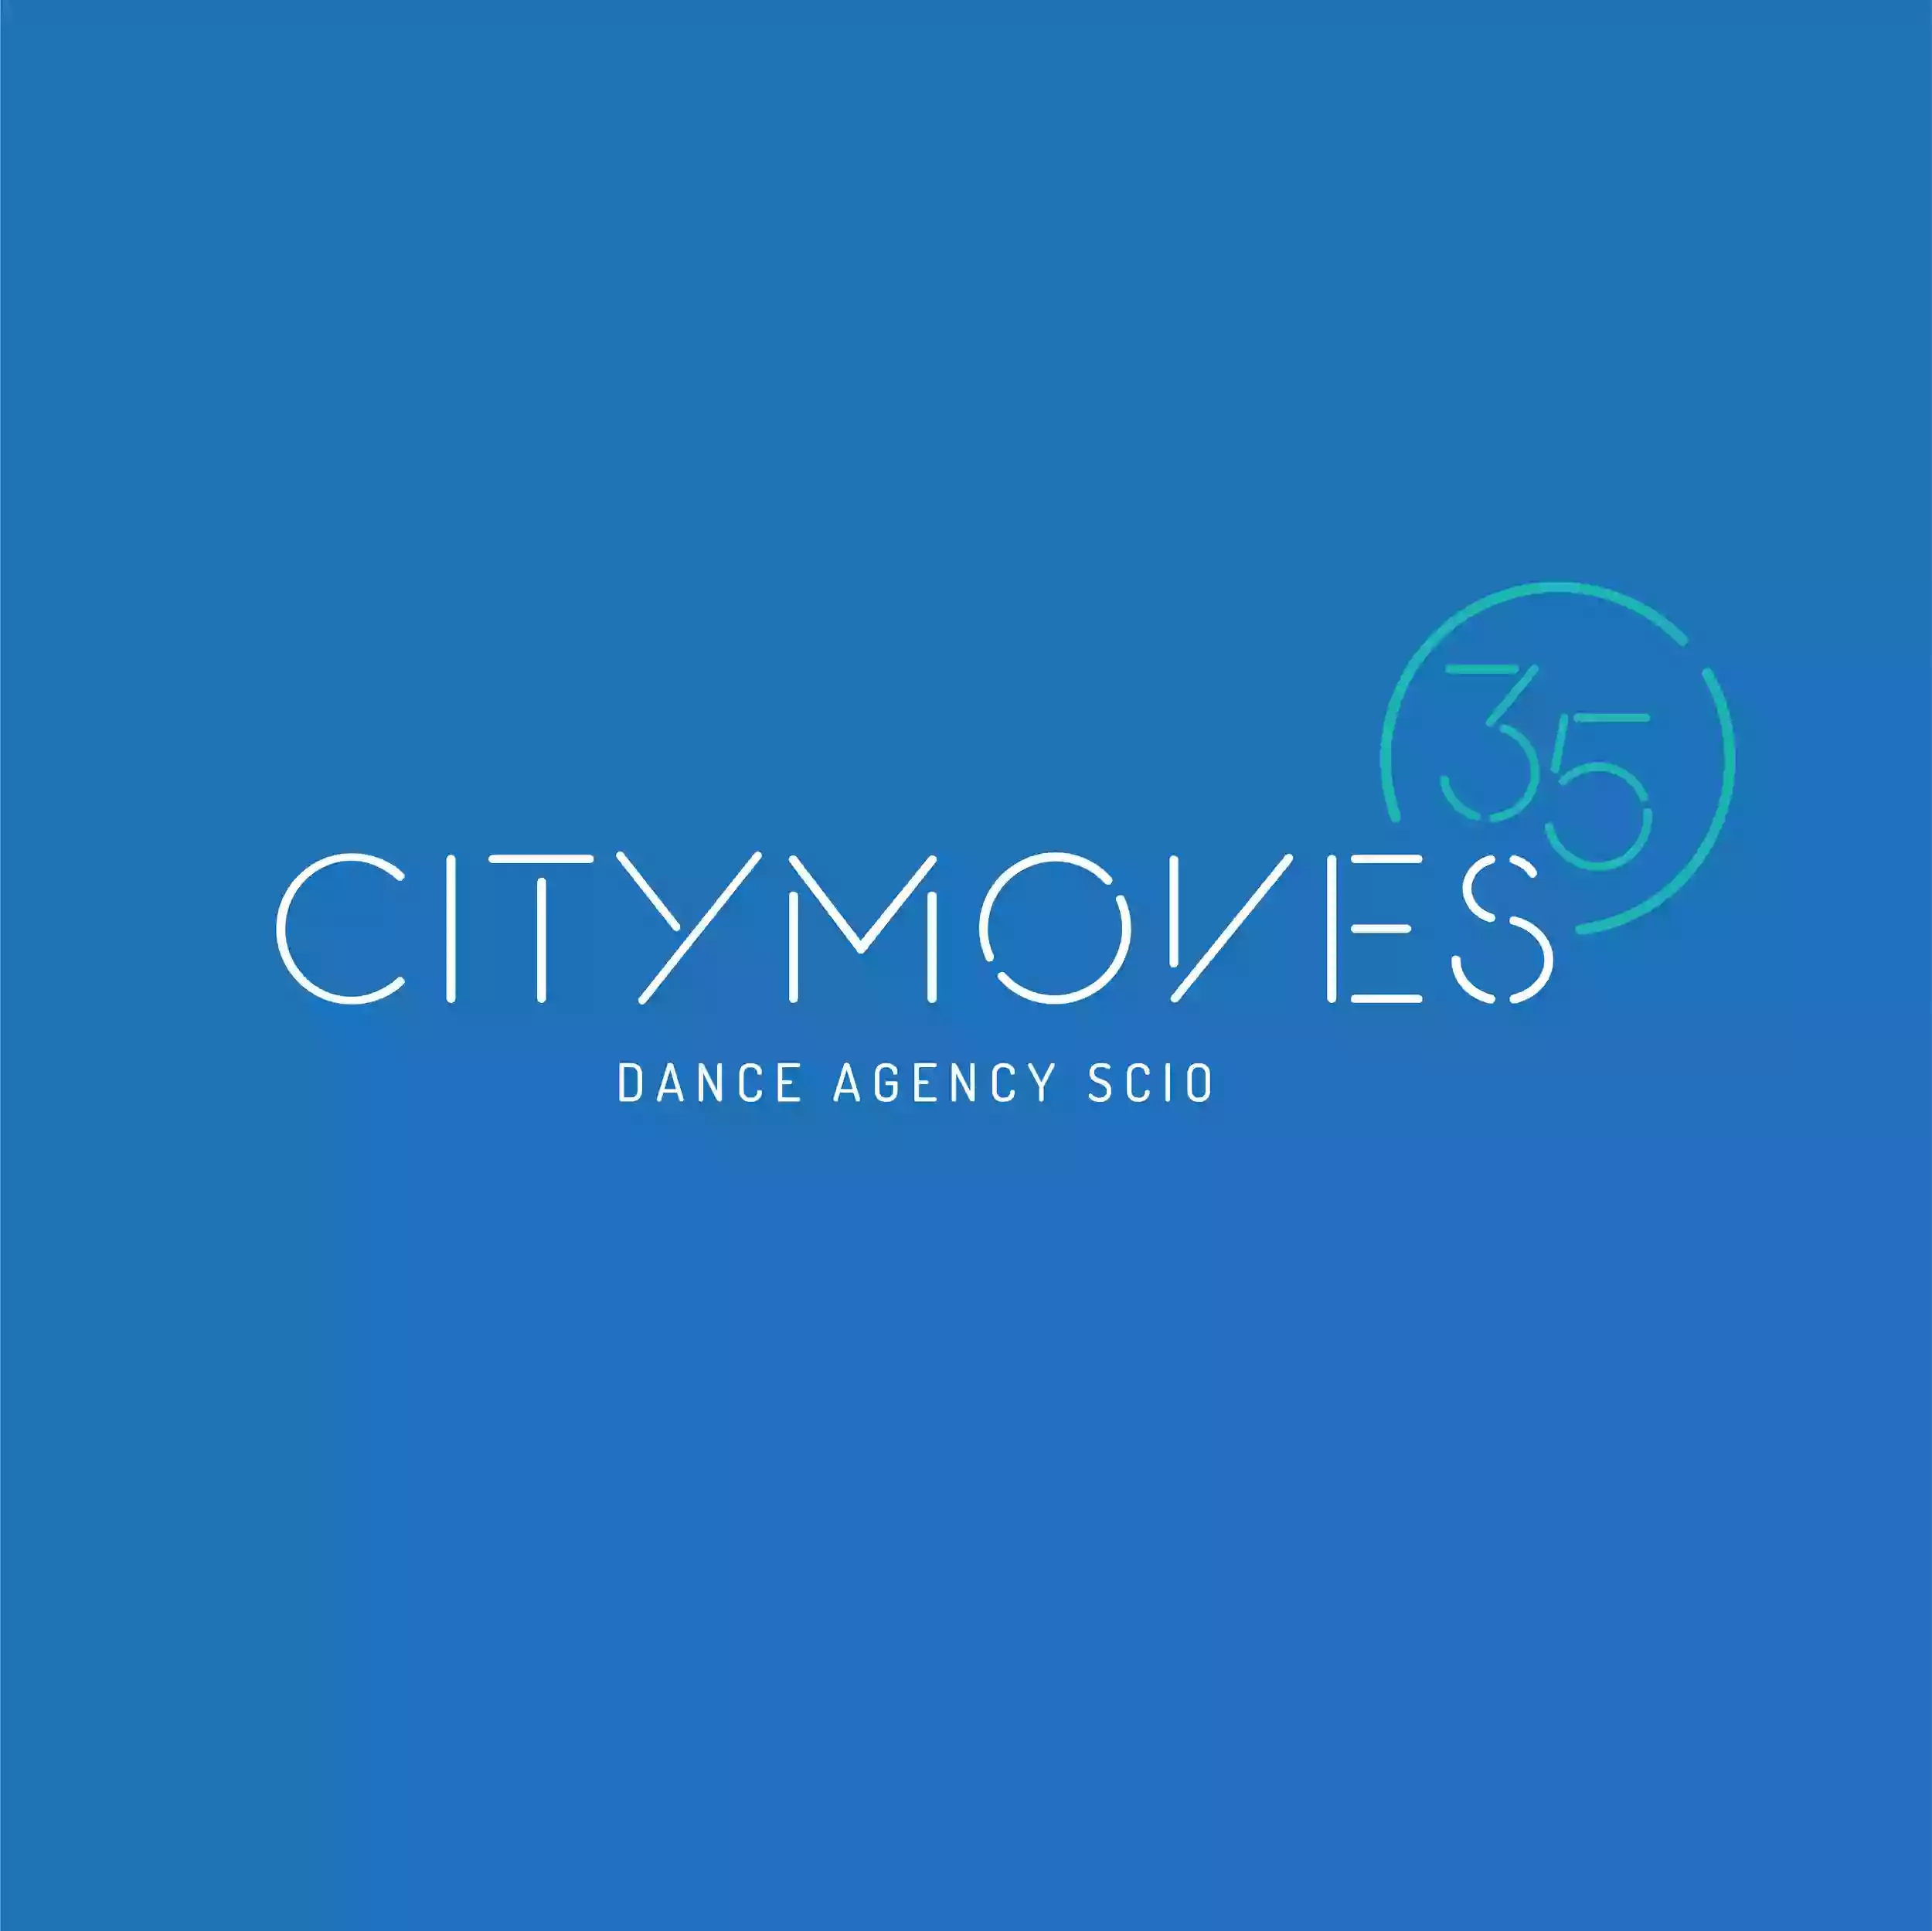 Citymoves Dance Agency SCIO